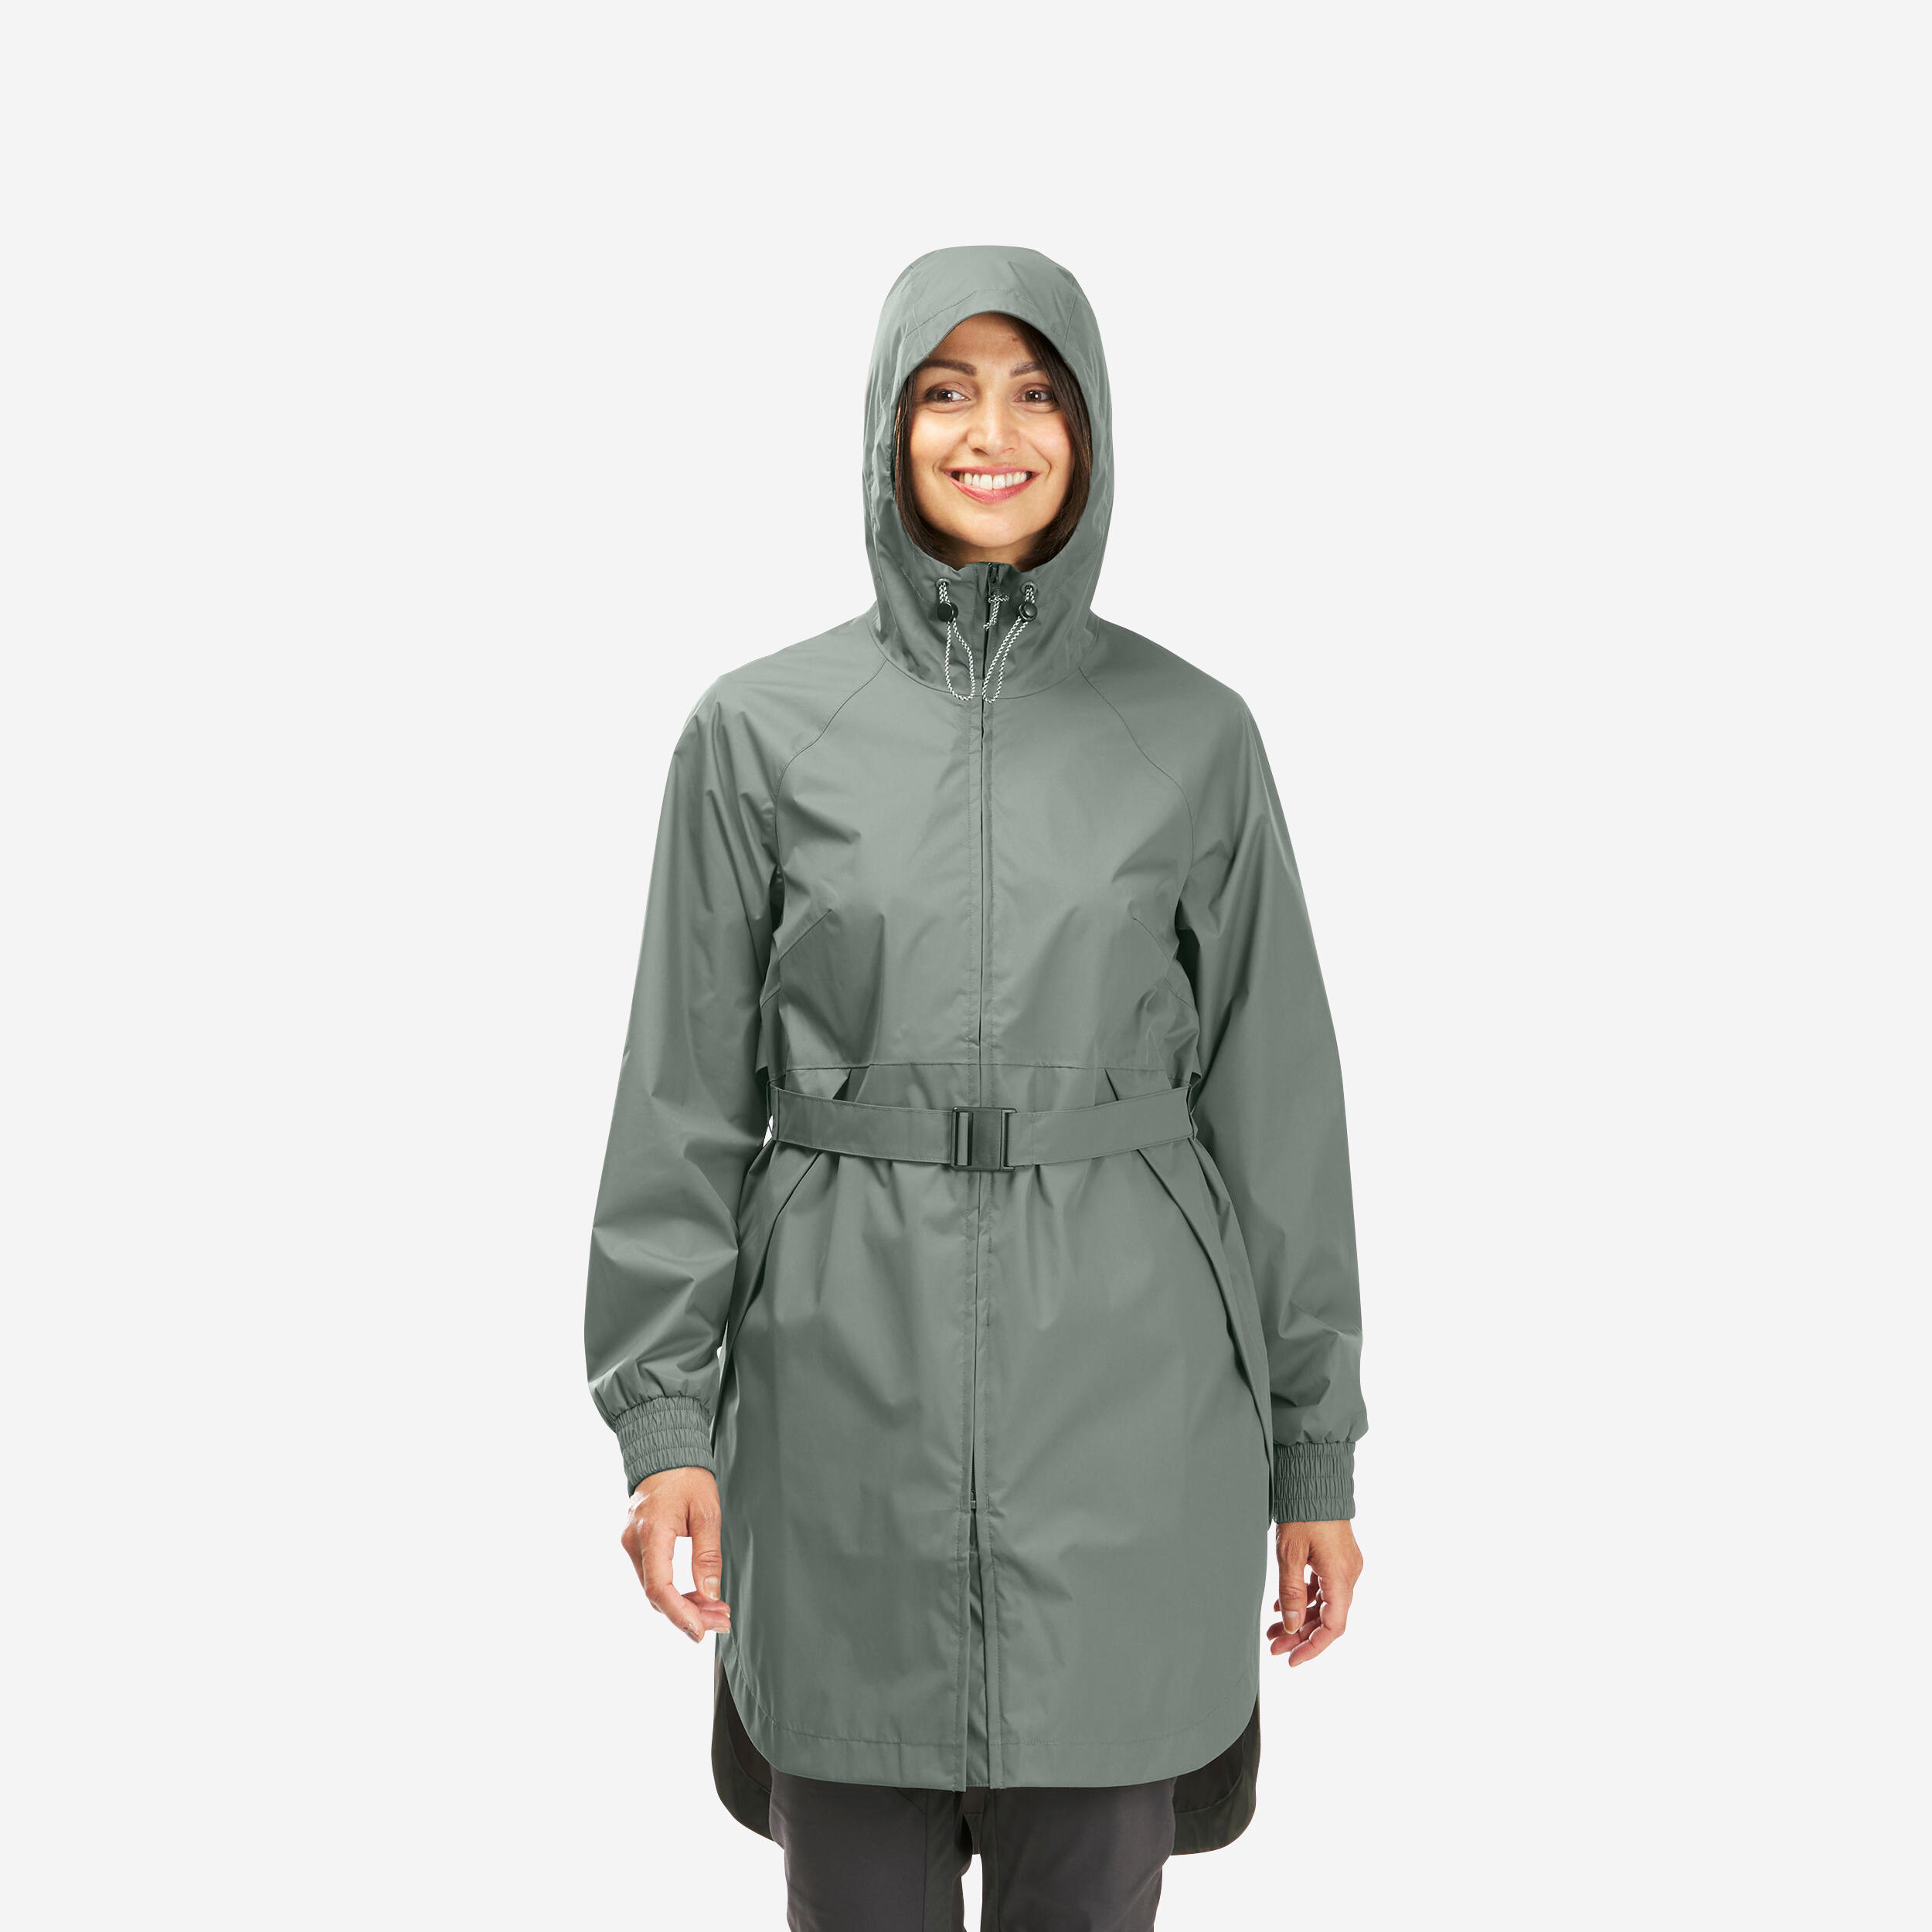 Women's Rain Jackets & Waterproof Coats | REI Co-op